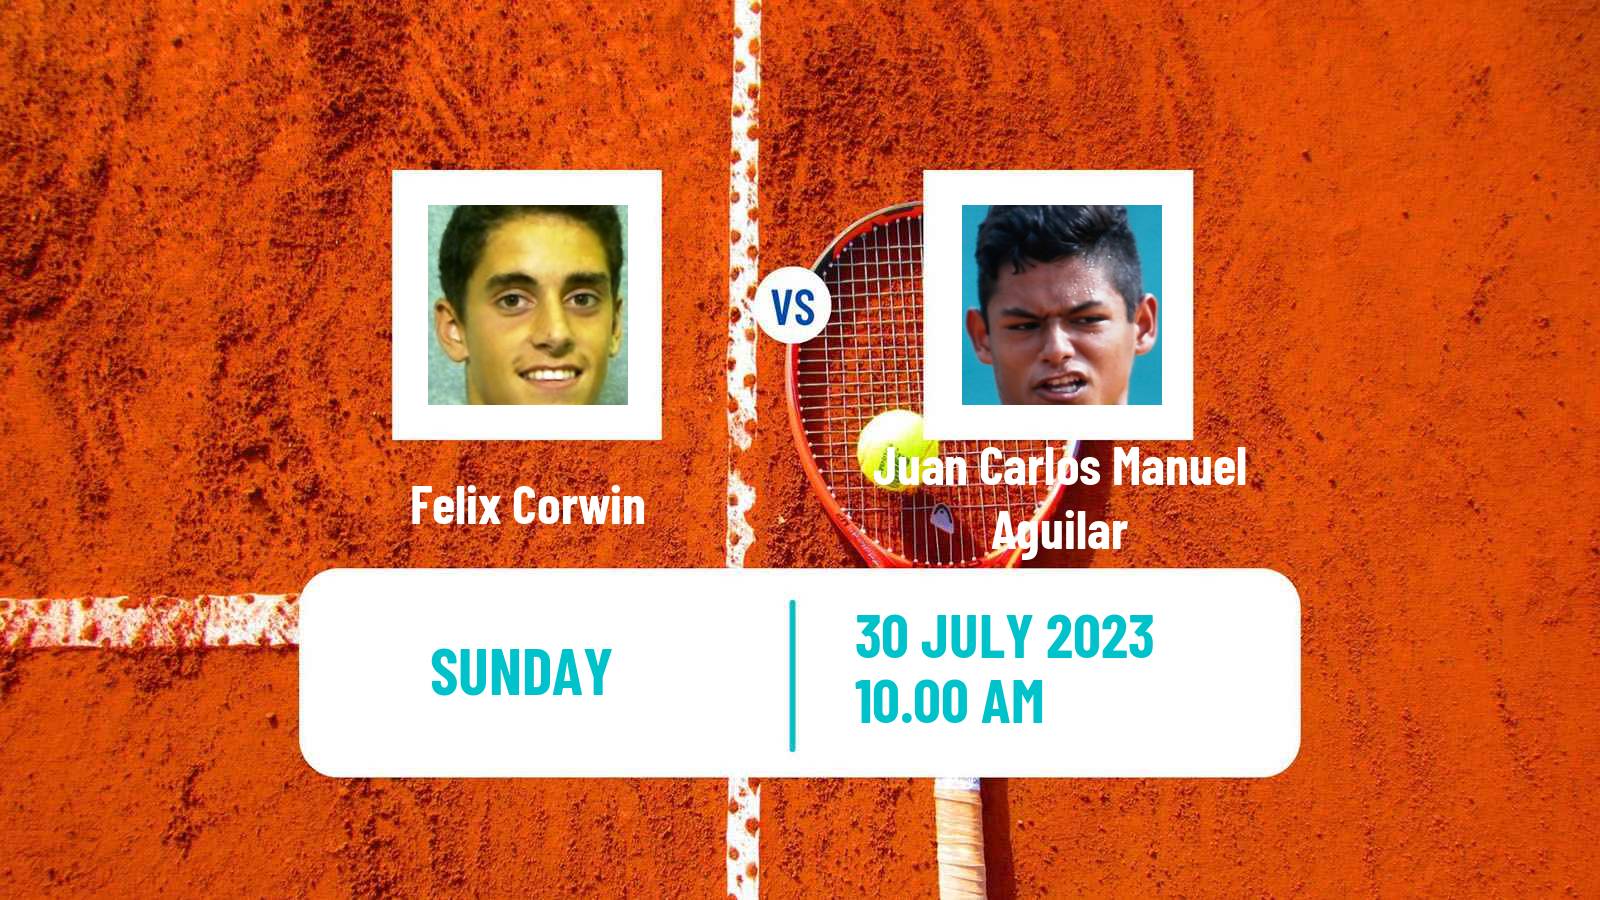 Tennis ITF M15 Pittsburgh Pa Men Felix Corwin - Juan Carlos Manuel Aguilar